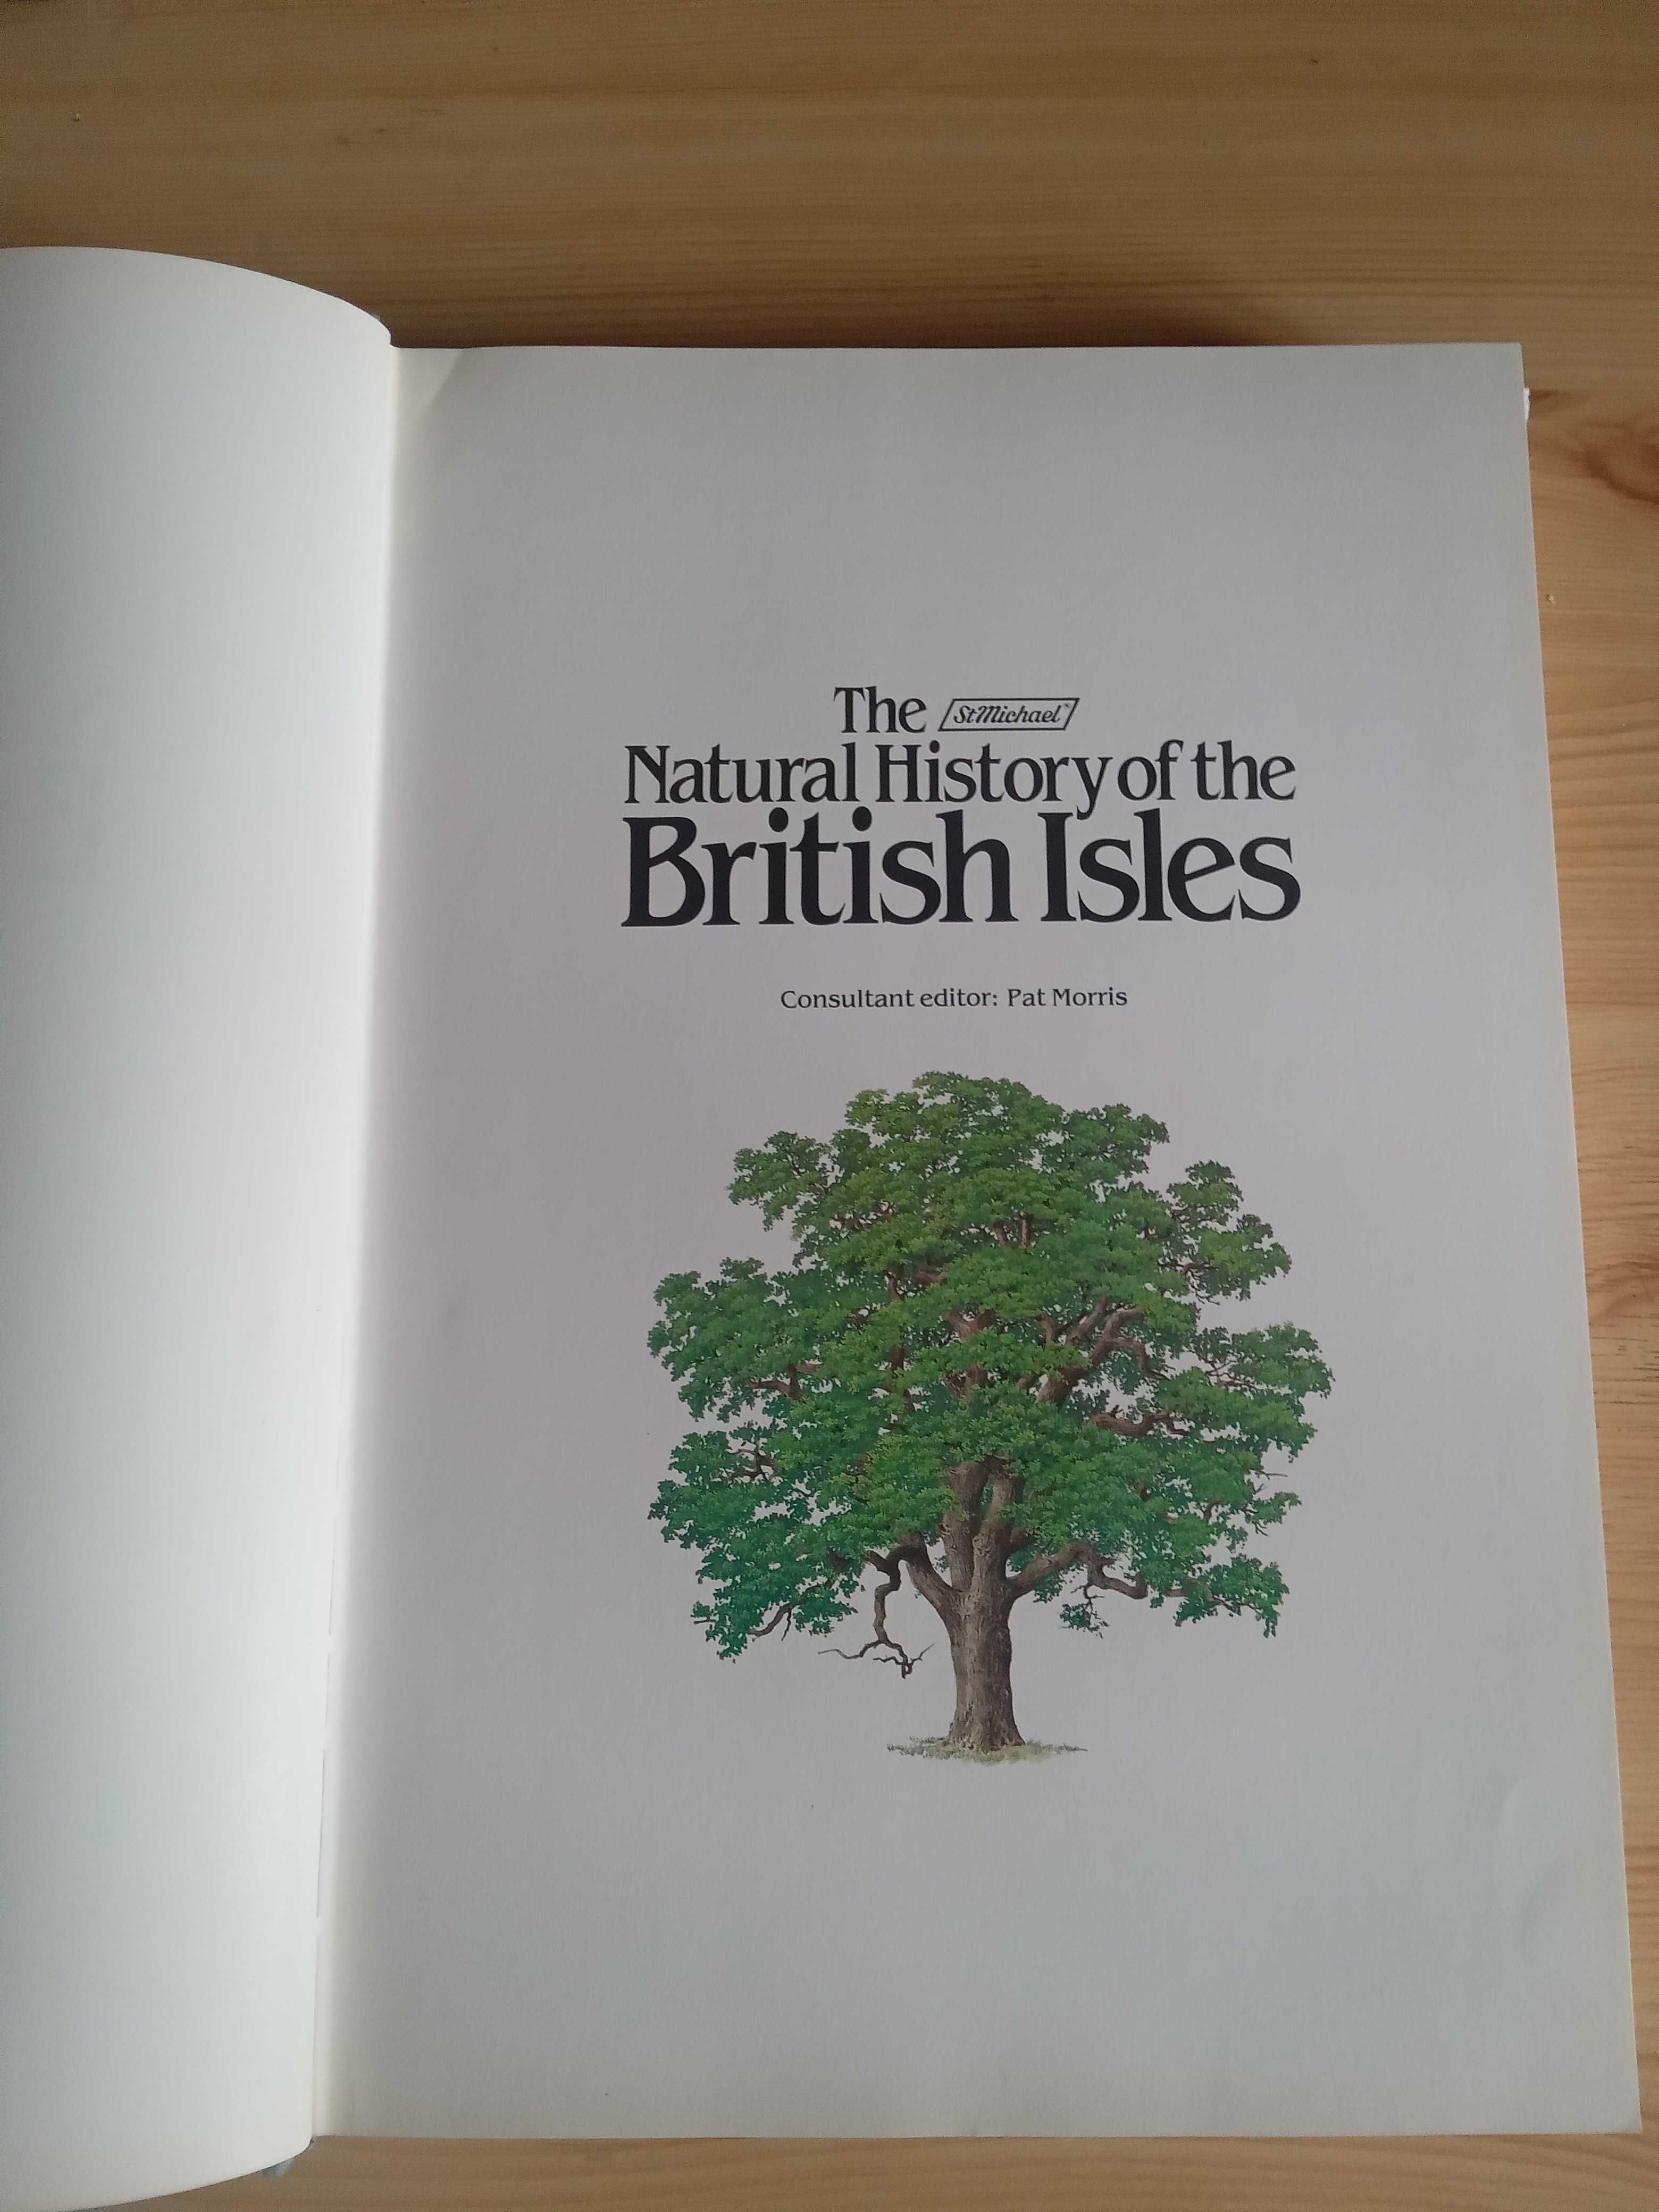 Книга о млекопитающих на Британских островах.анг яз